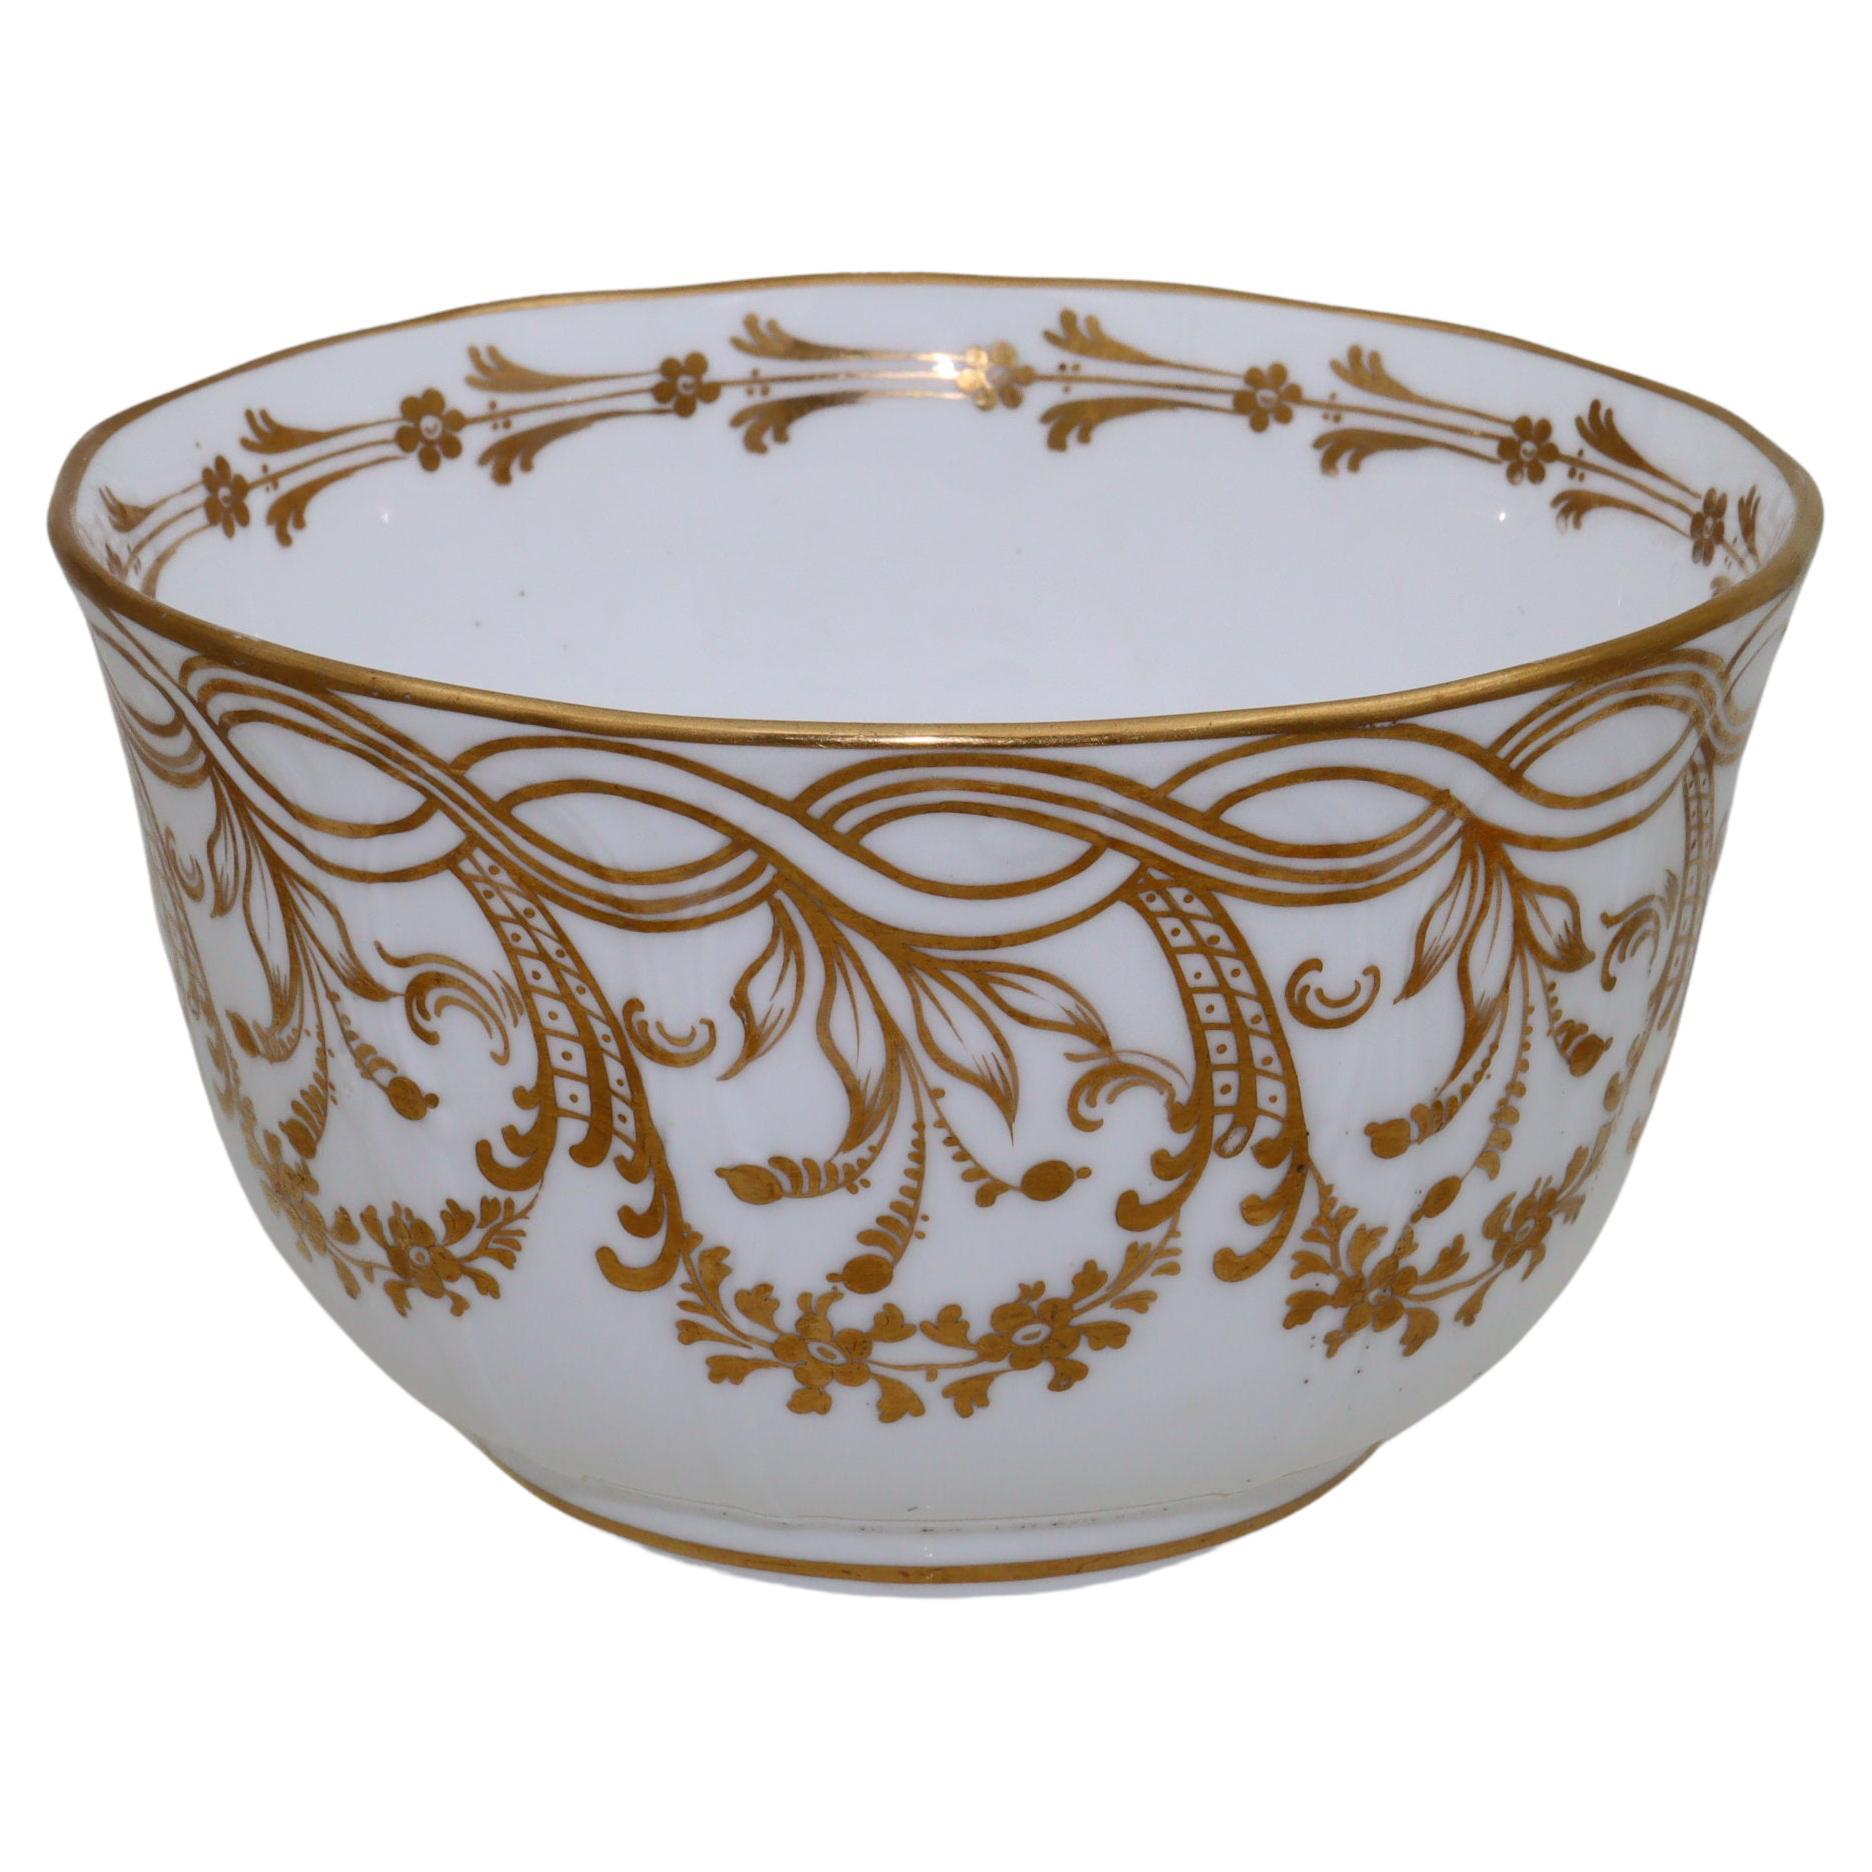 Hand gilded Davenport porcelain slop bowl